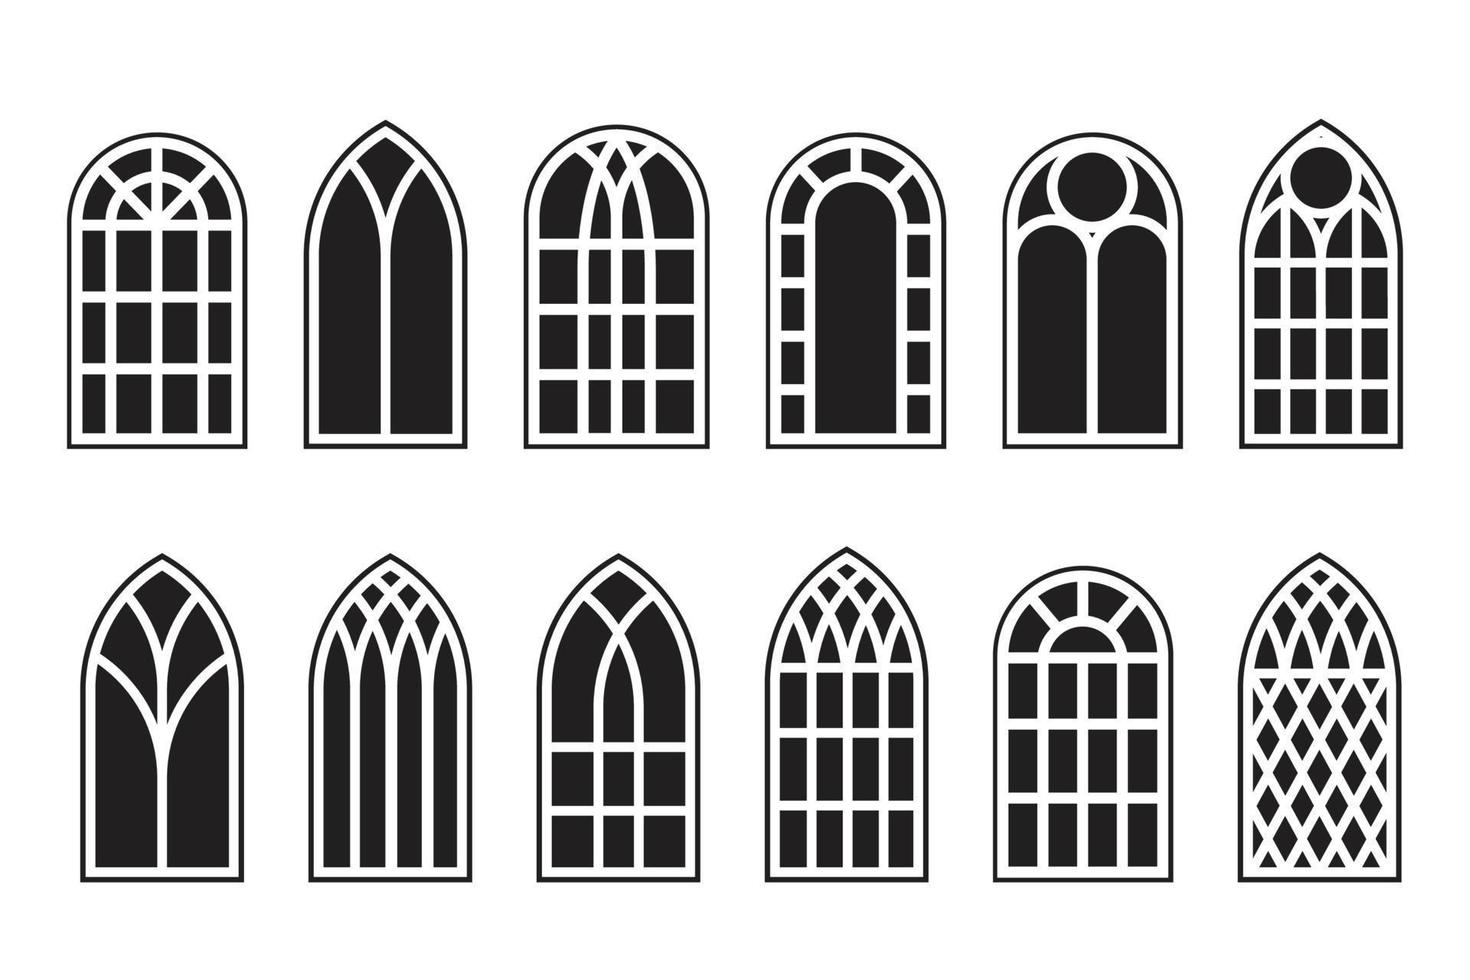 set di contorni di finestre gotiche. sagoma di cornici da chiesa vintage in vetro colorato. elemento di architettura europea tradizionale. vettore